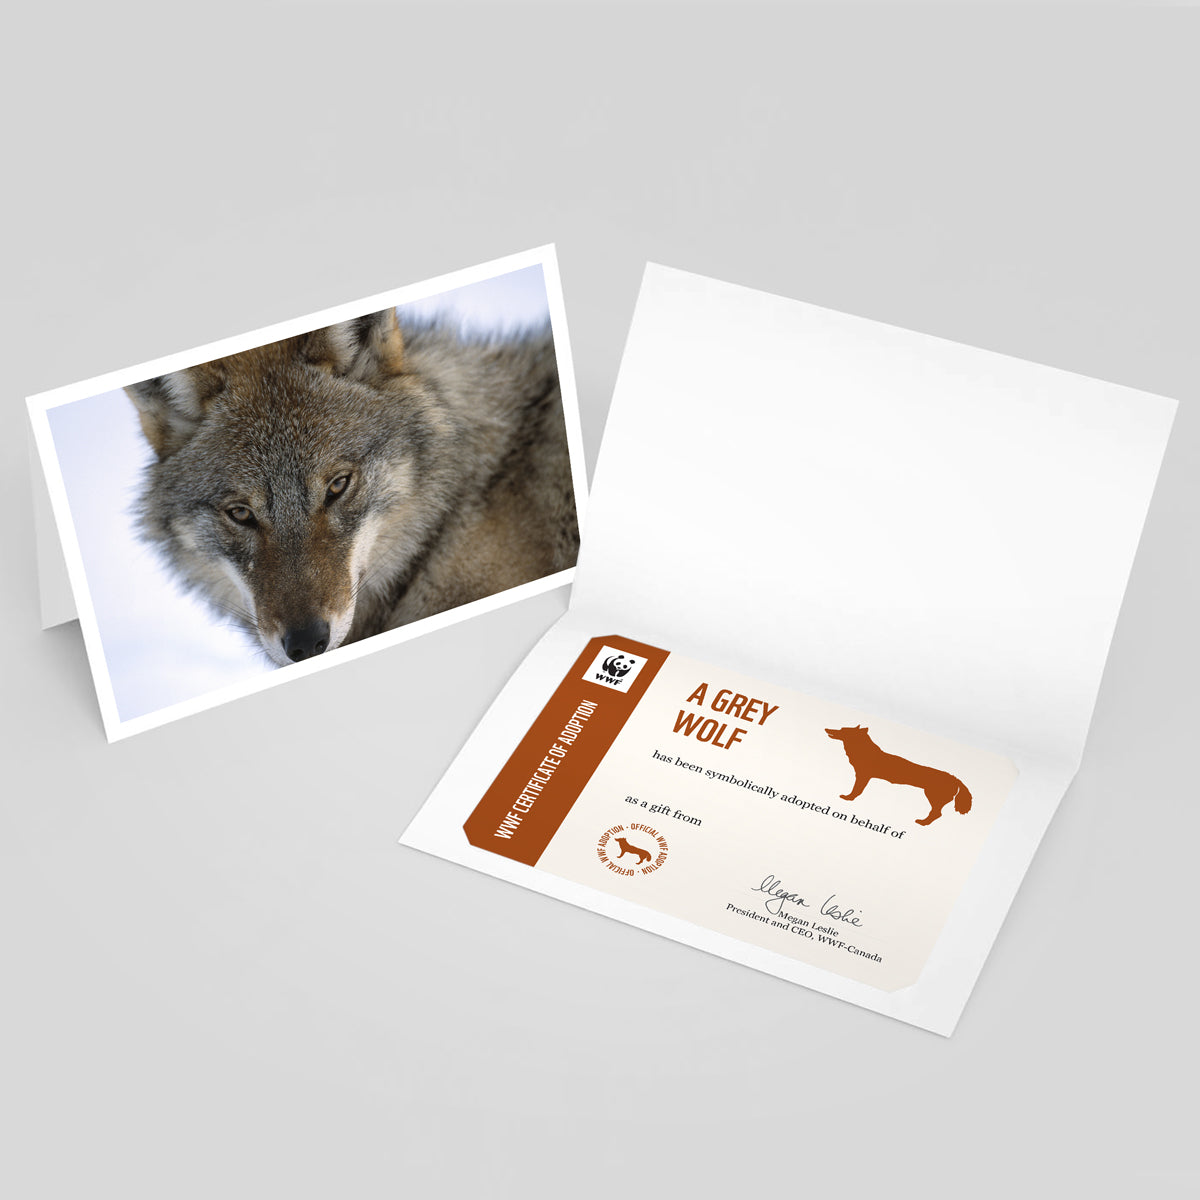 Grey wolf adoption card - WWF-Canada